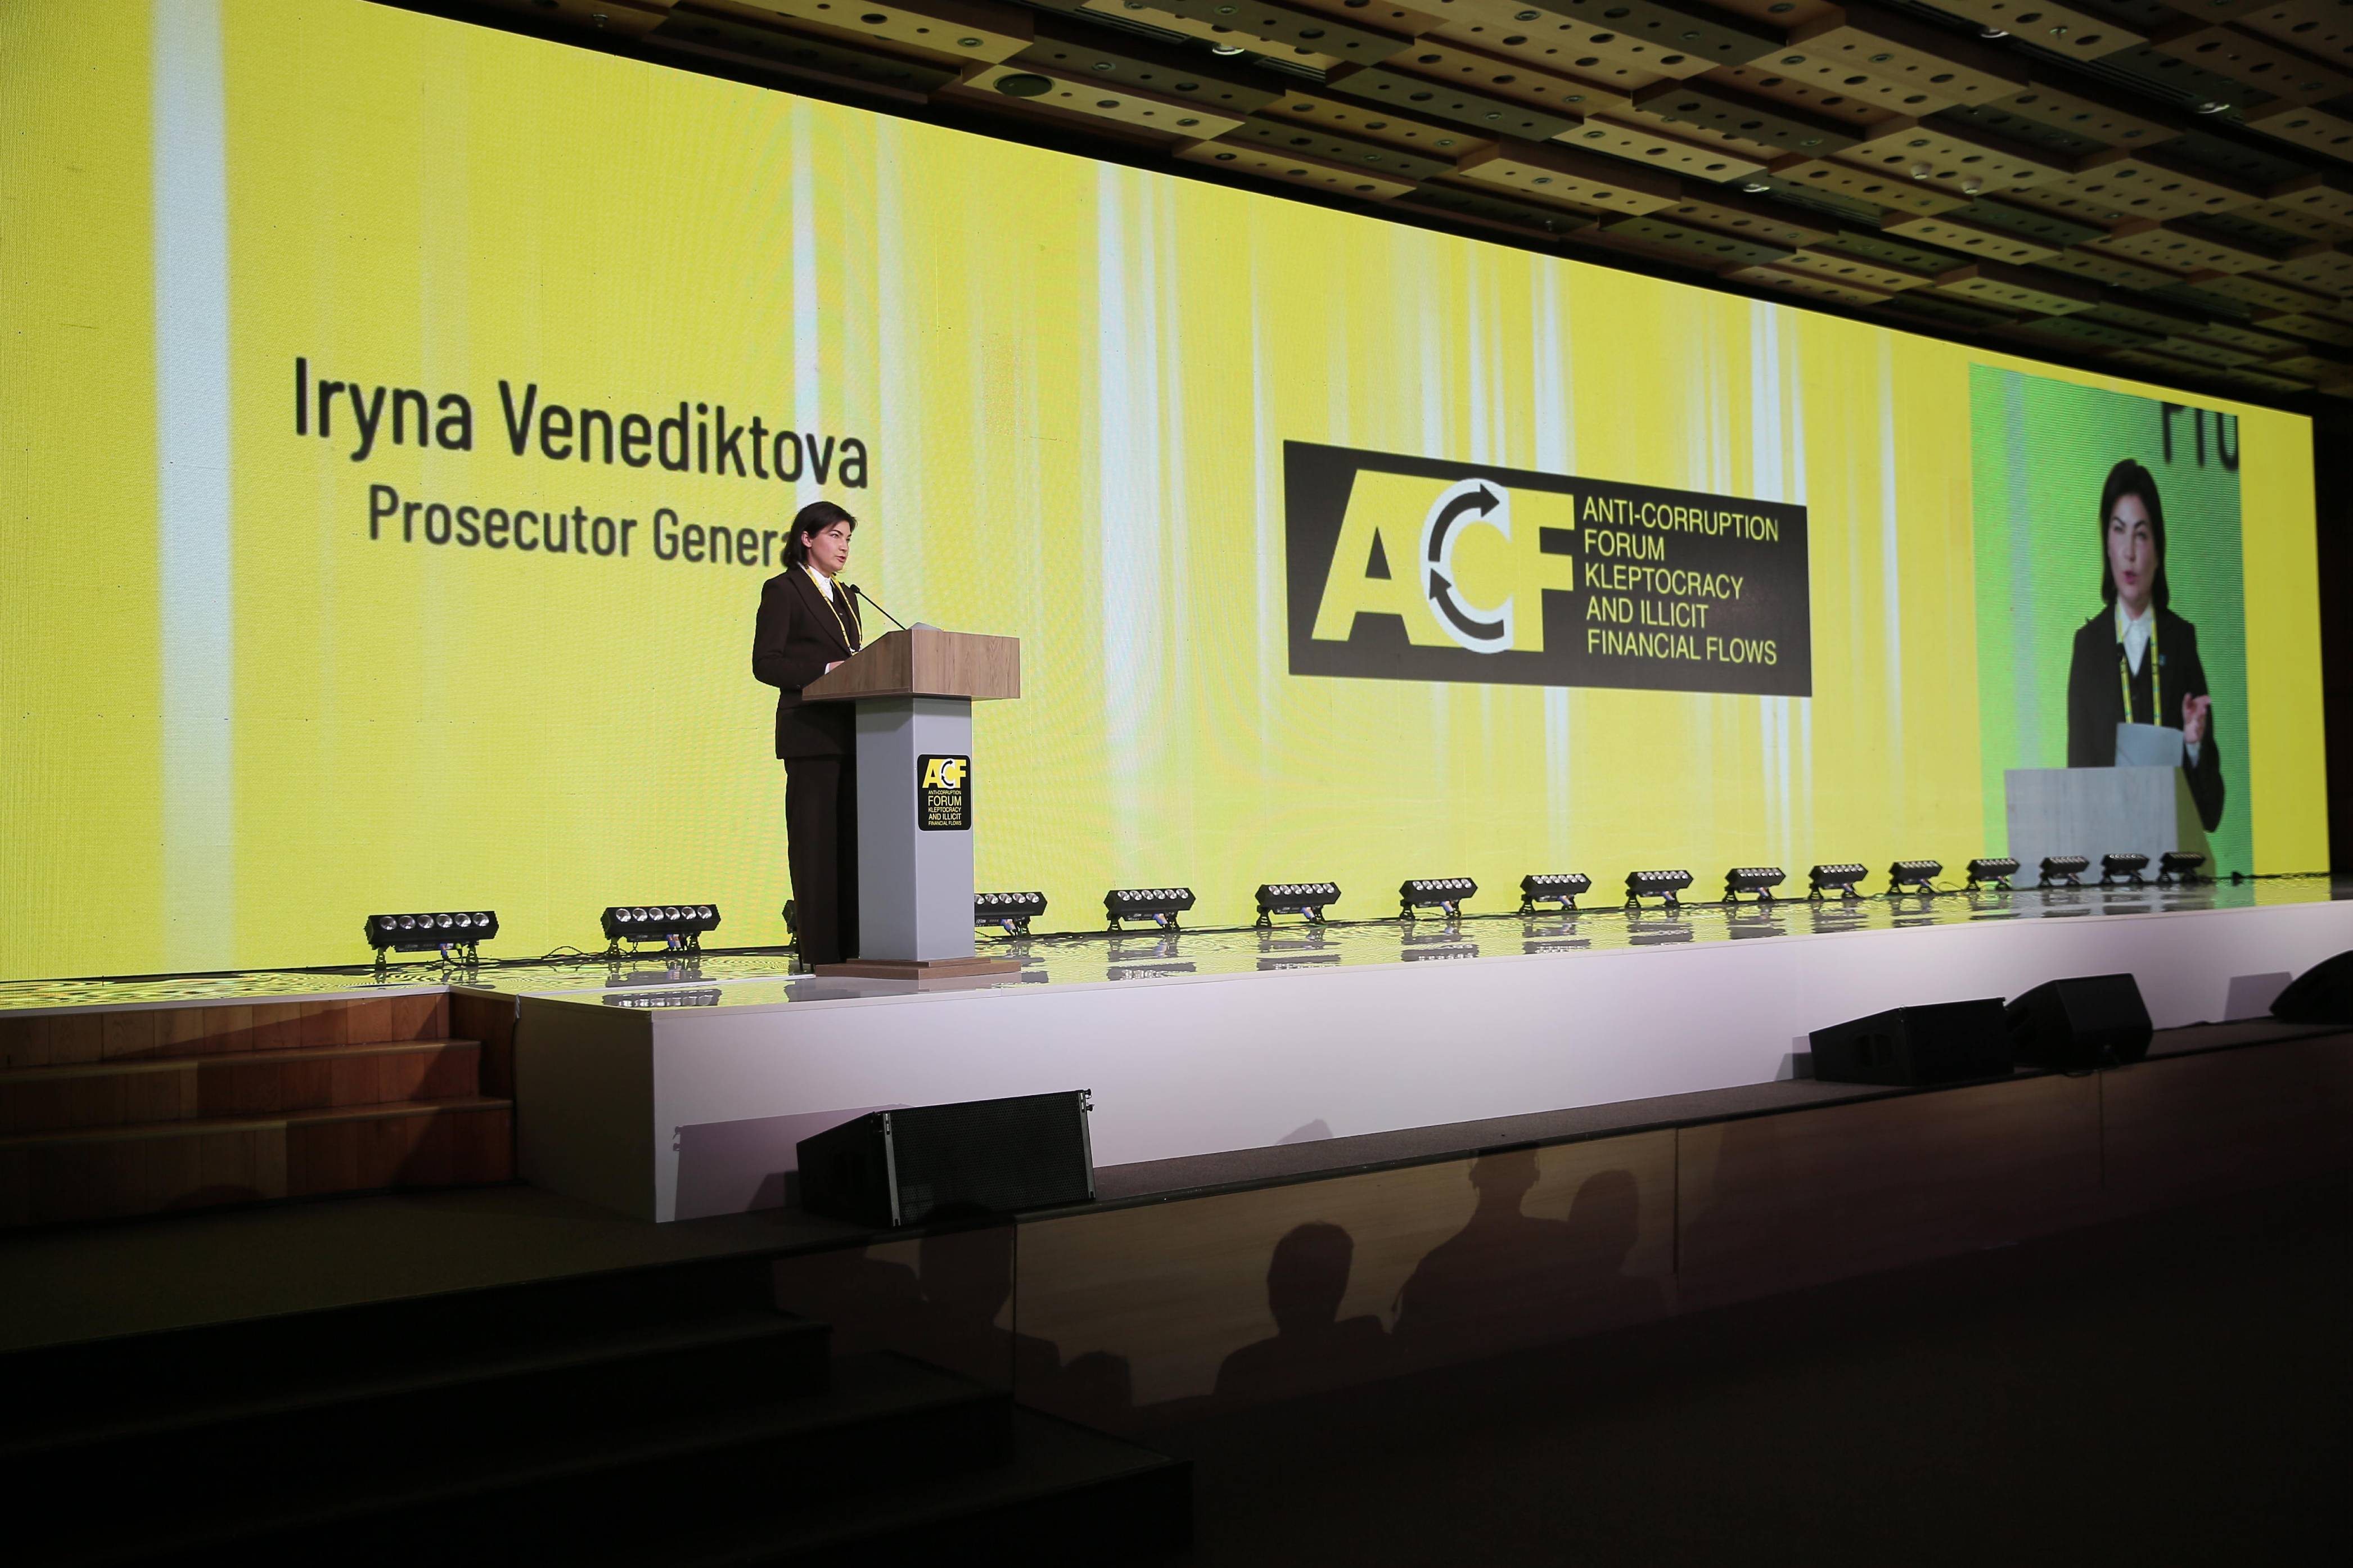 Генеральний прокурор Ірина Венедіктова відкрила Міжнародний антикорупційний форум «Клептократія і незаконні фінансові потоки»